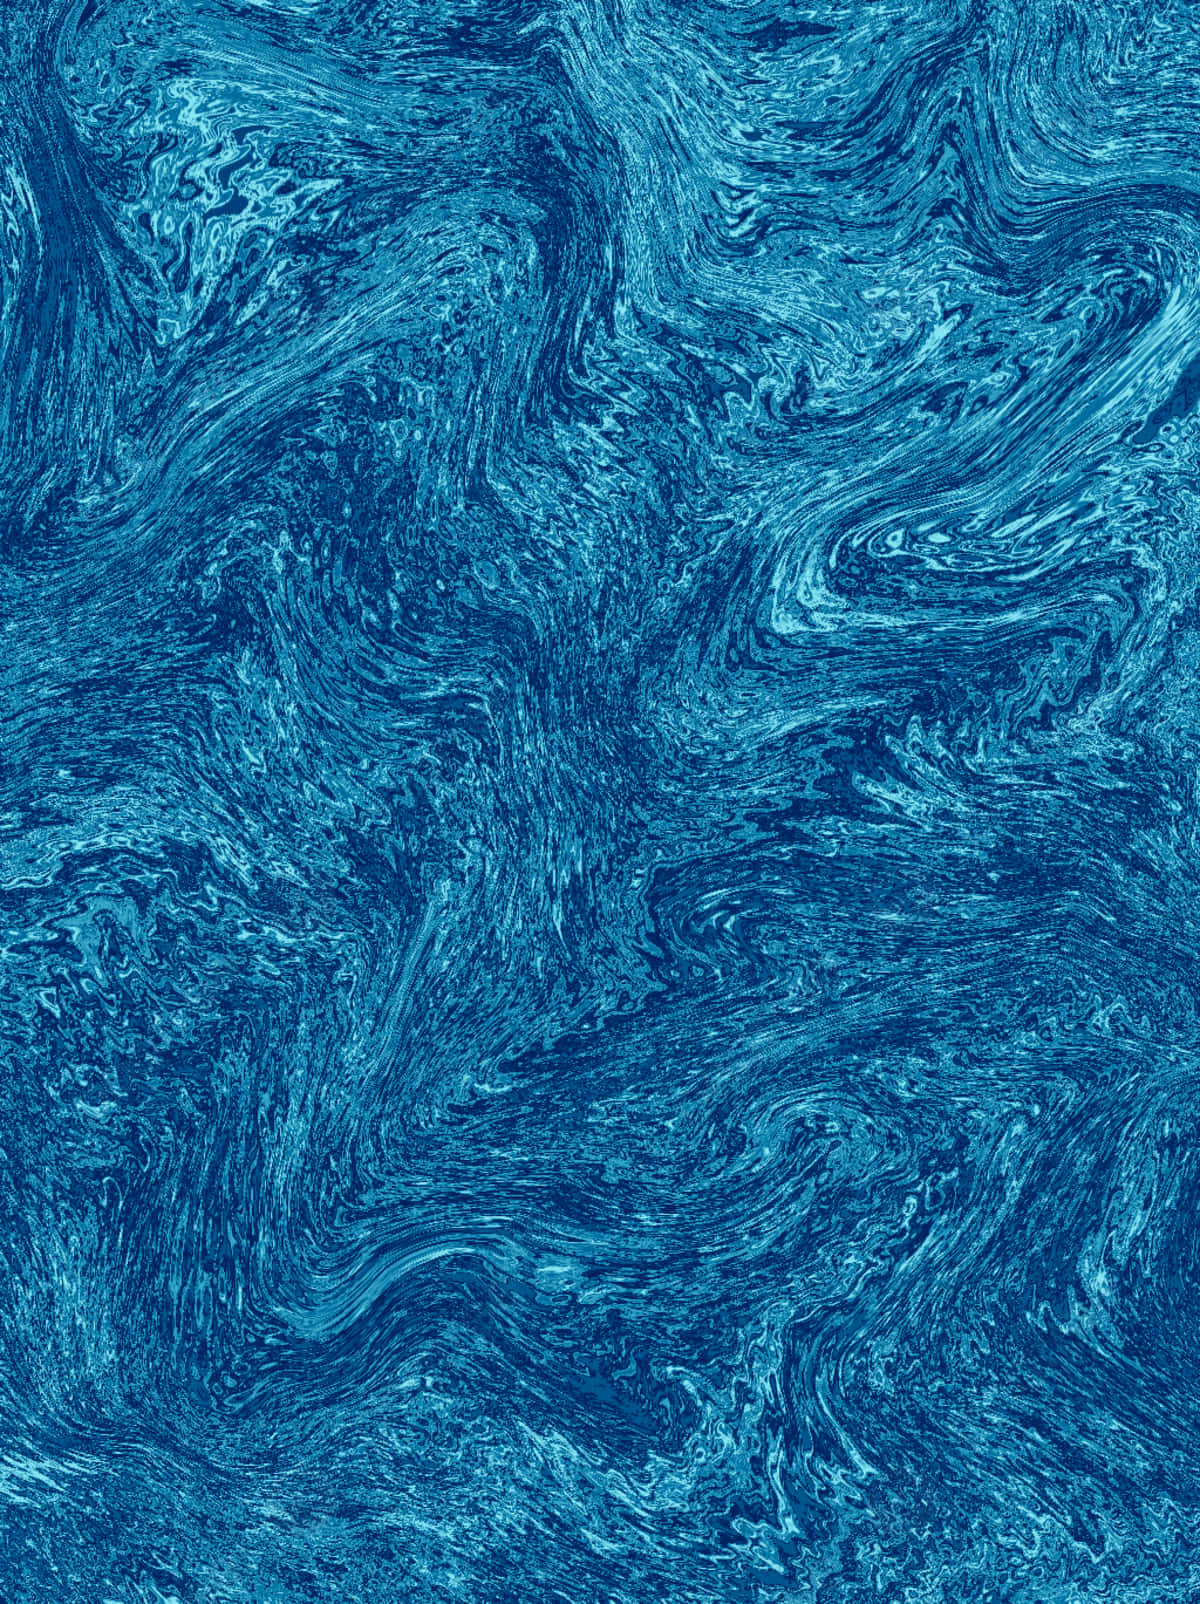 Imágenesde Textura Ondeada En Azul.